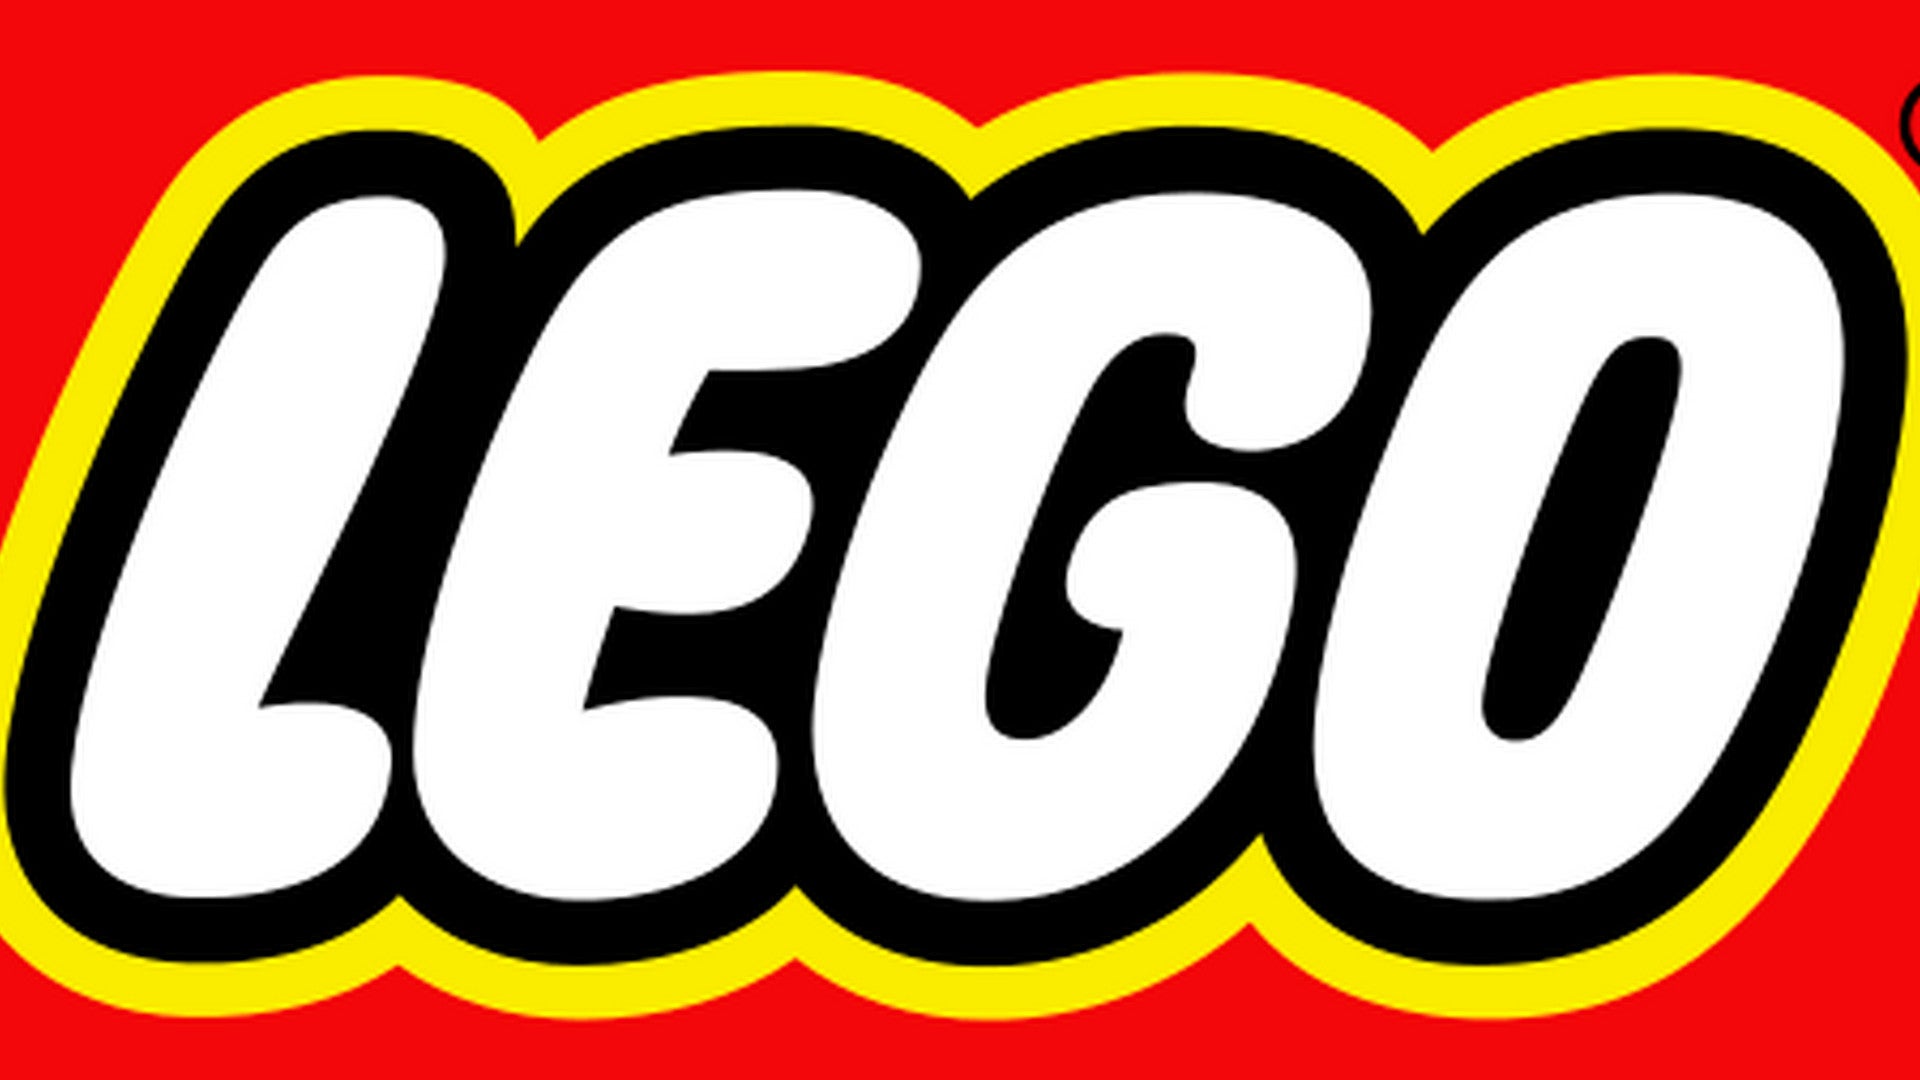 Bilder zu Atari VCS: Lego bringt angeblich ein Set zum 50. Geburtstag von Atari